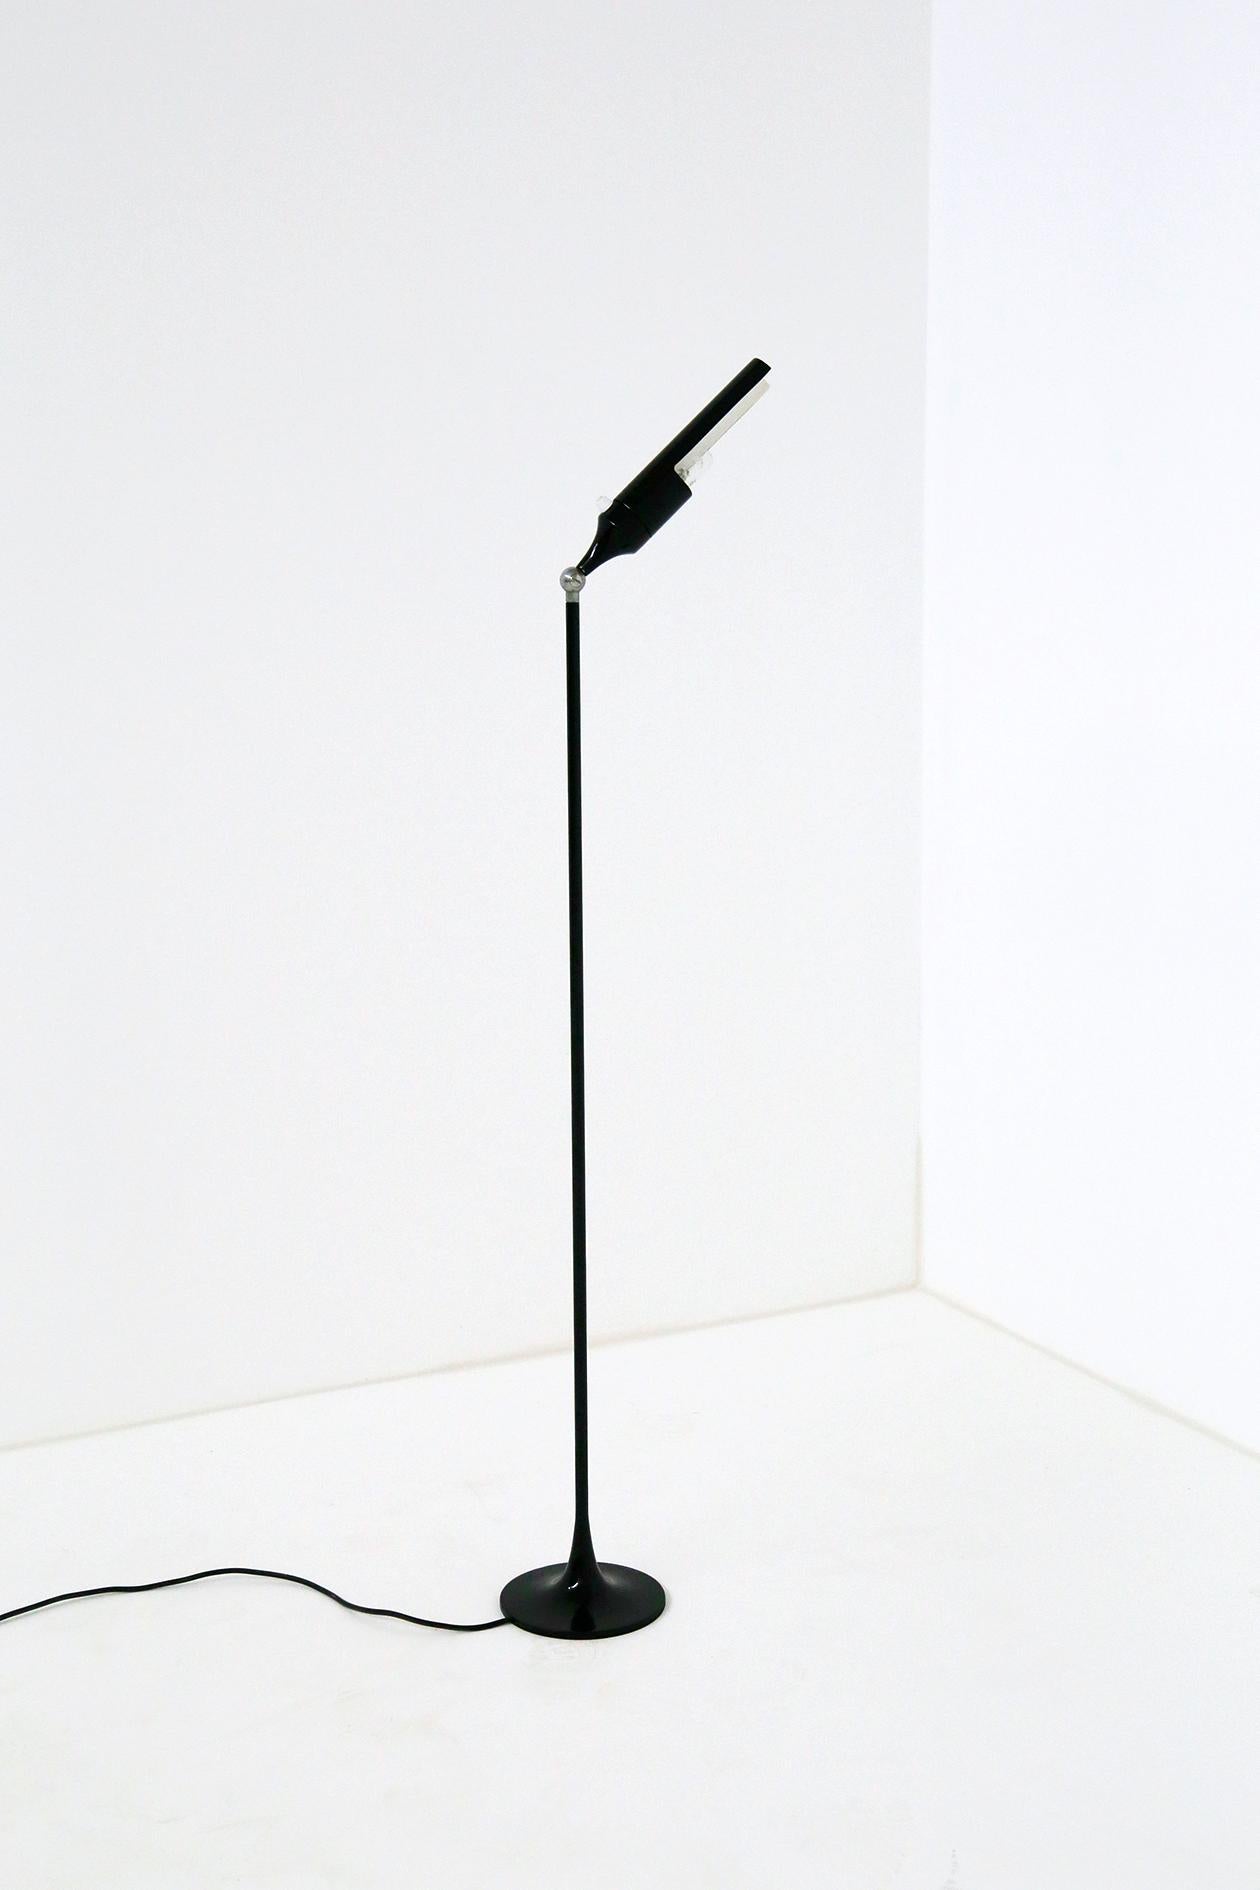 Mid-Century Modern Gino Sarfatti Midcentury Black Floor Lamp for Arteluce, Model No. 1086, 1961